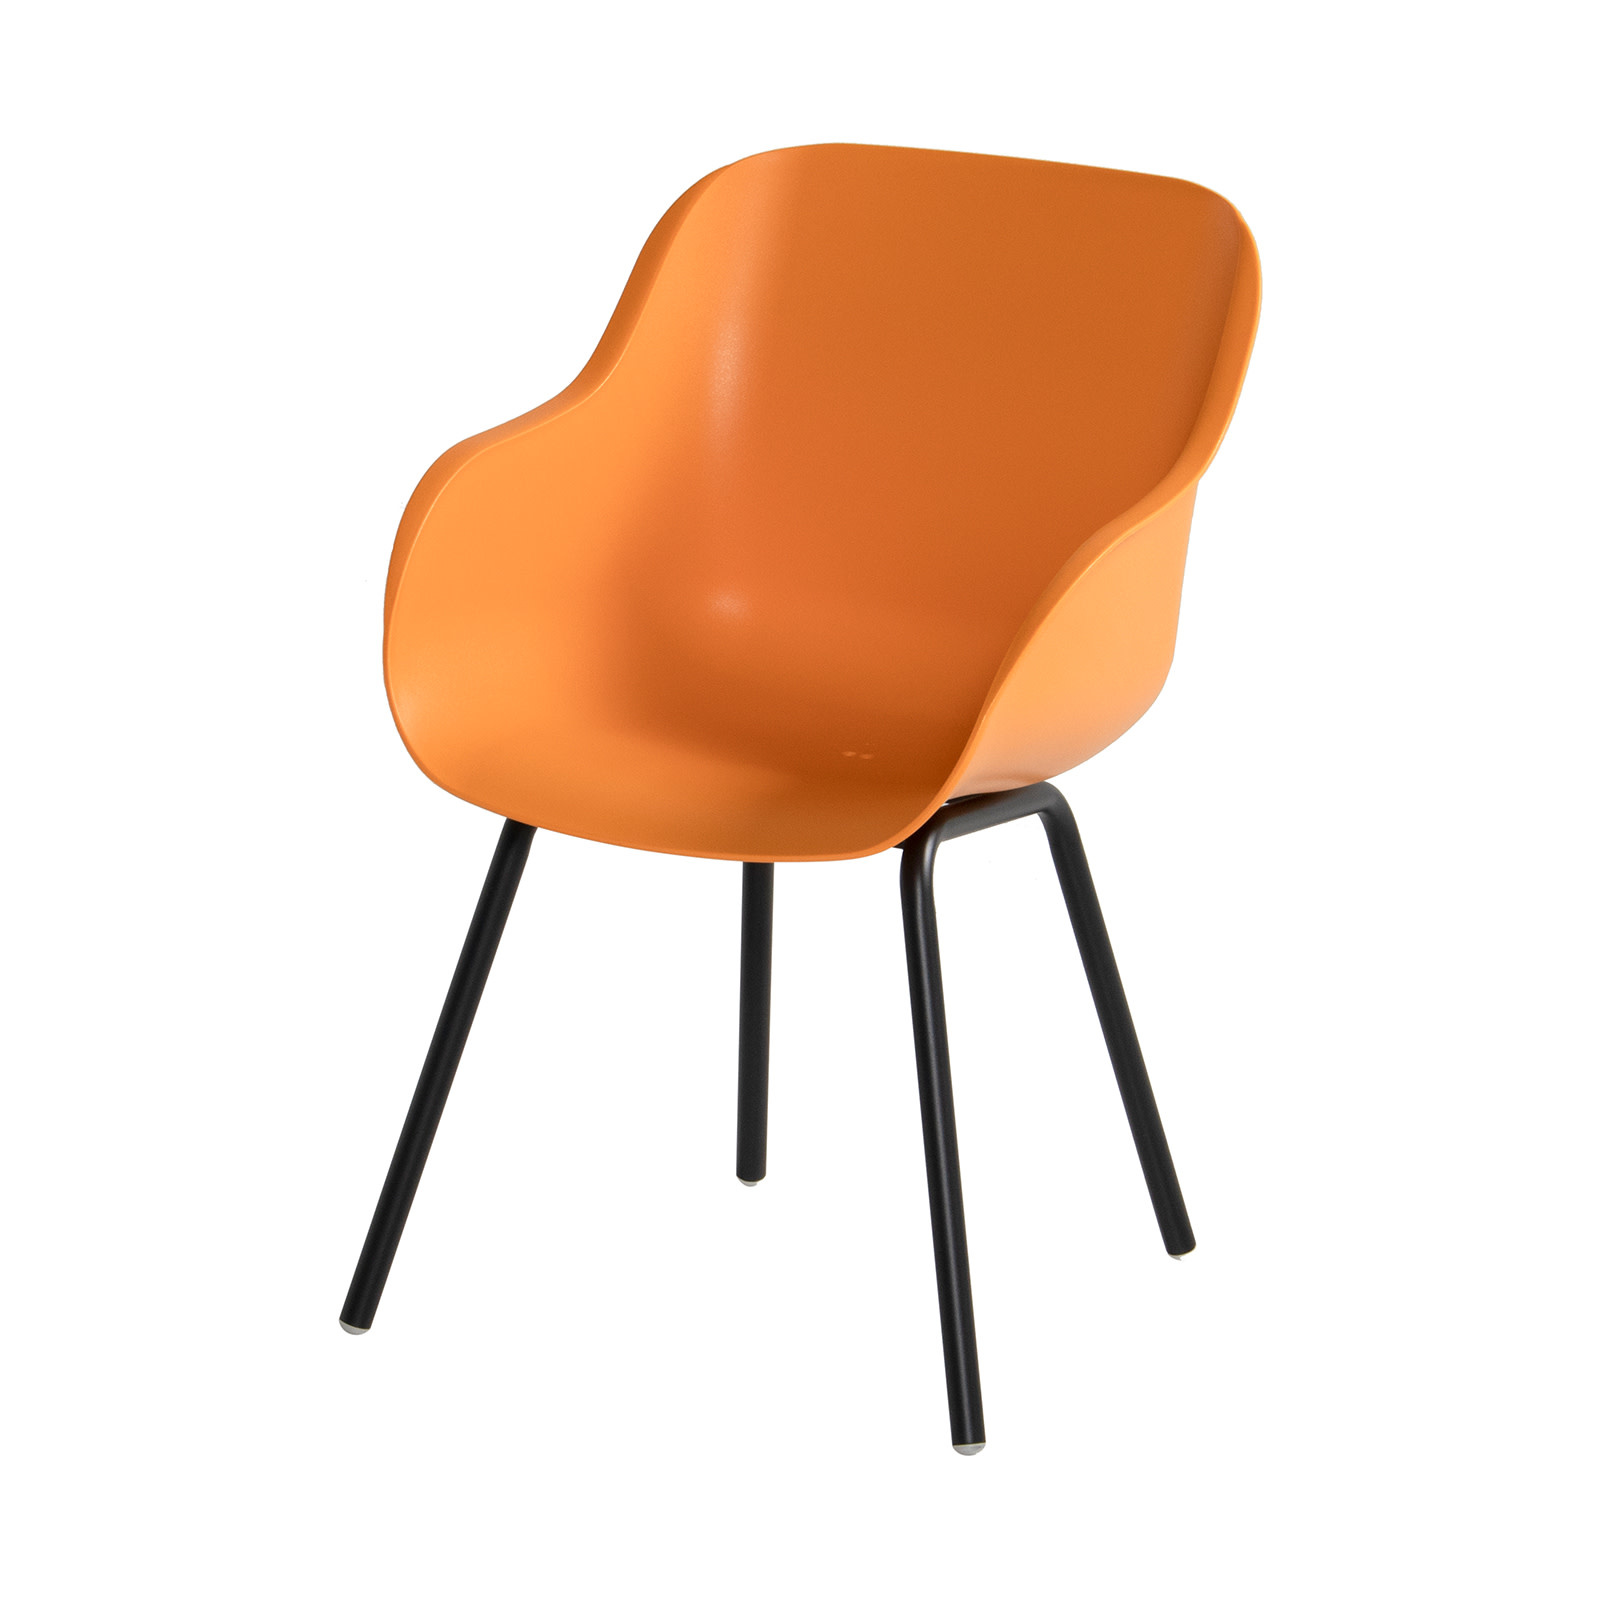 Hartman Hartman set 5-delig Sophie elegance chair NEW ORANGE met tafel sophie studio HPL 128cm  black